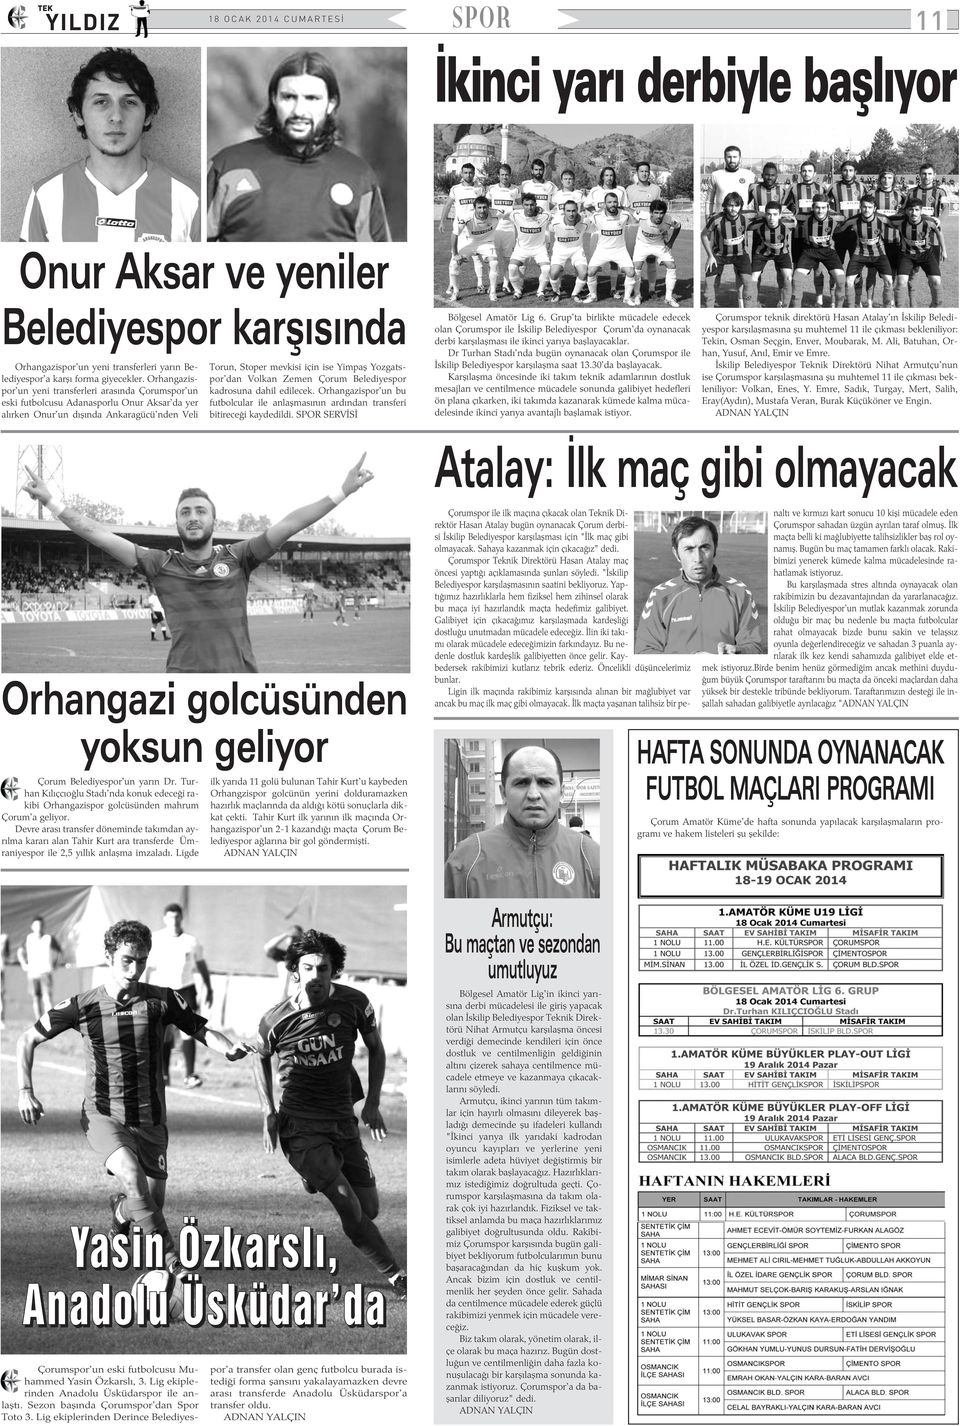 Yozgatspor'dan Volkan Zemen Çorum Belediyespor kadrosuna dahil edilecek. Orhangazispor'un bu futbolcular ile anlaþmasýnýn ardýndan transferi bitireceði kaydedildi. SPOR SERVÝSÝ Bölgesel Amatör Lig 6.